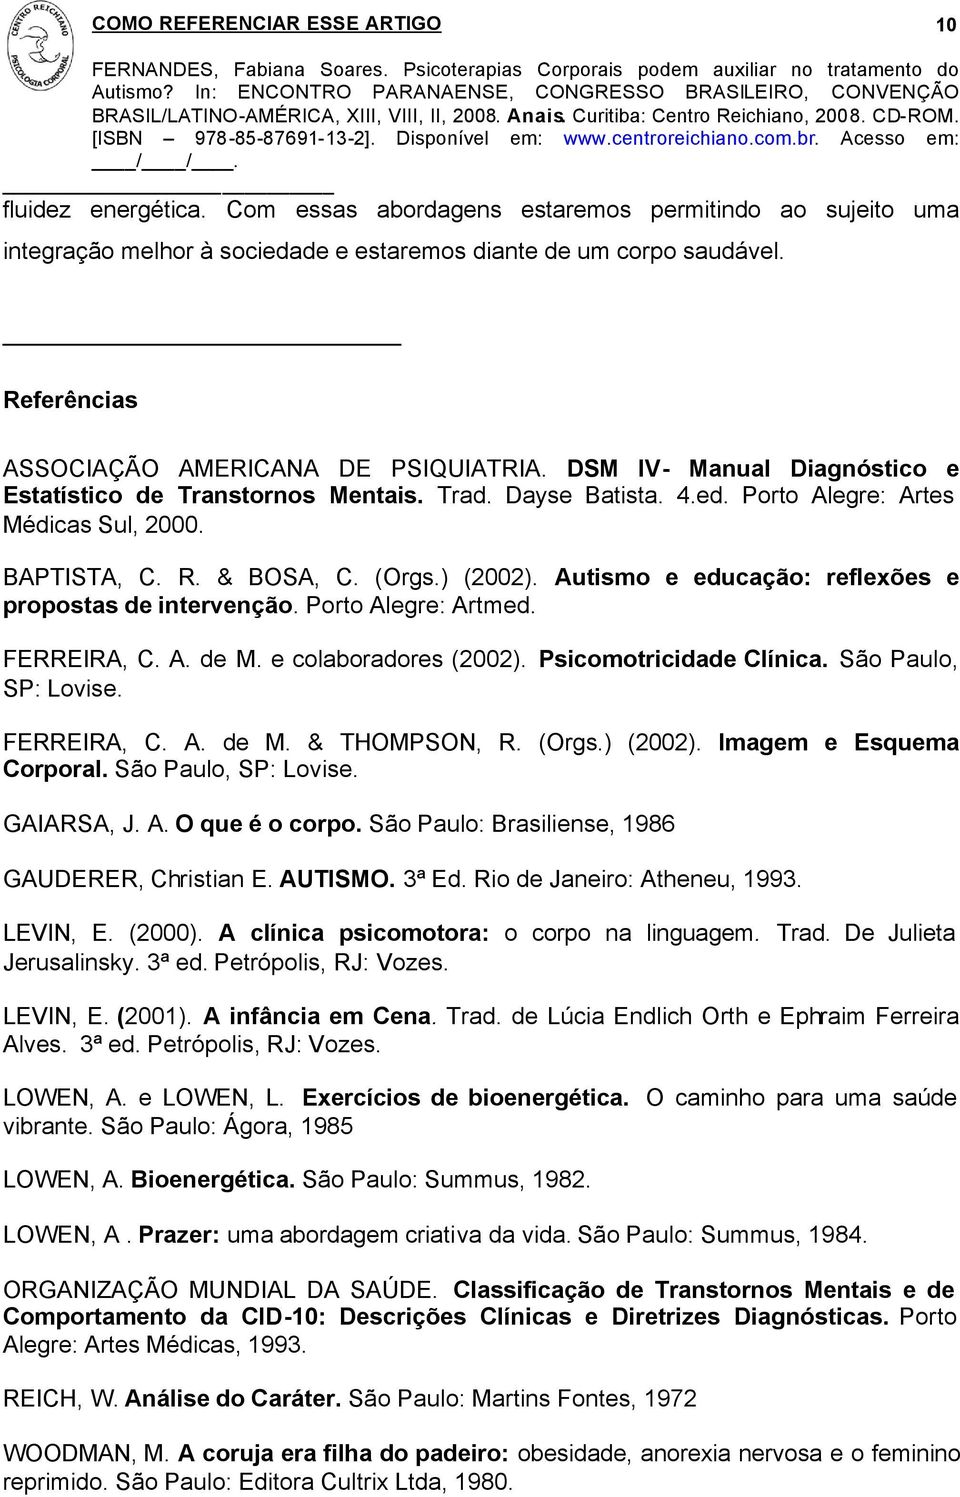 Autismo e educação: reflexões e propostas de intervenção. Porto Alegre: Artmed. FERREIRA, C. A. de M. e colaboradores (2002). Psicomotricidade Clínica. São Paulo, SP: Lovise. FERREIRA, C. A. de M. & THOMPSON, R.